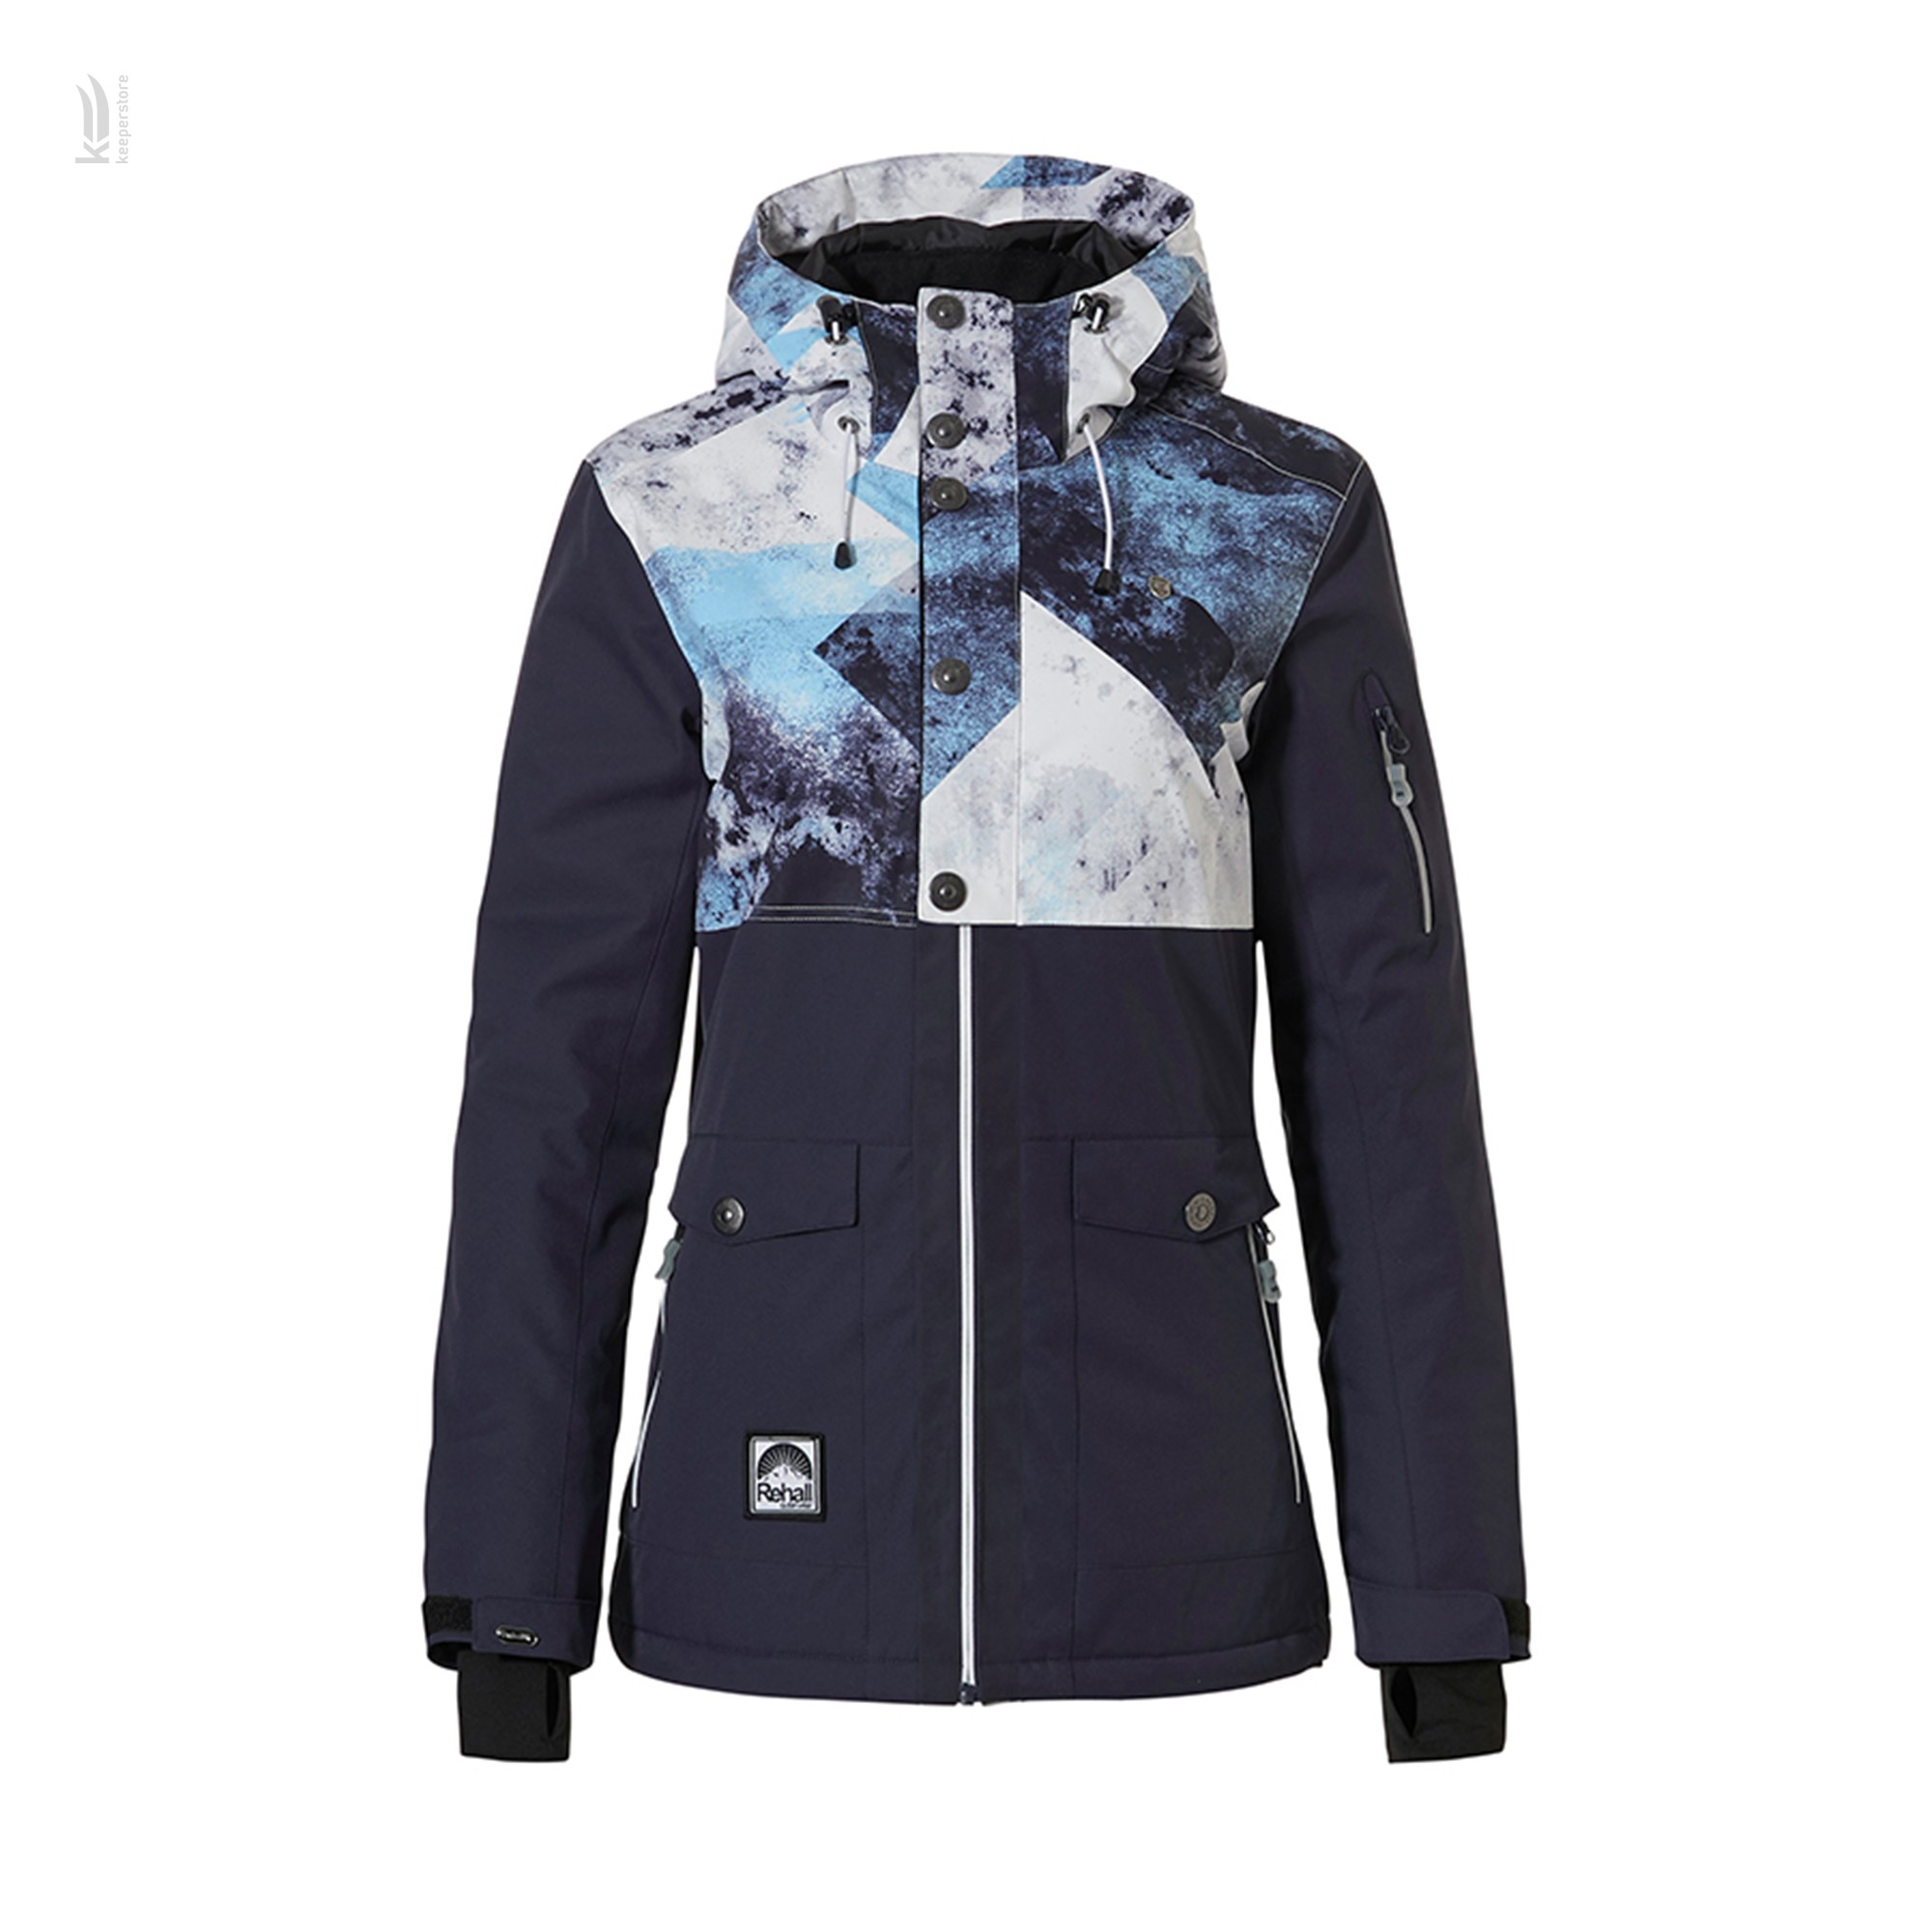 Інструкція куртка для скітуру Rehall EMMY-R Snowjacket Womens Navy (S)